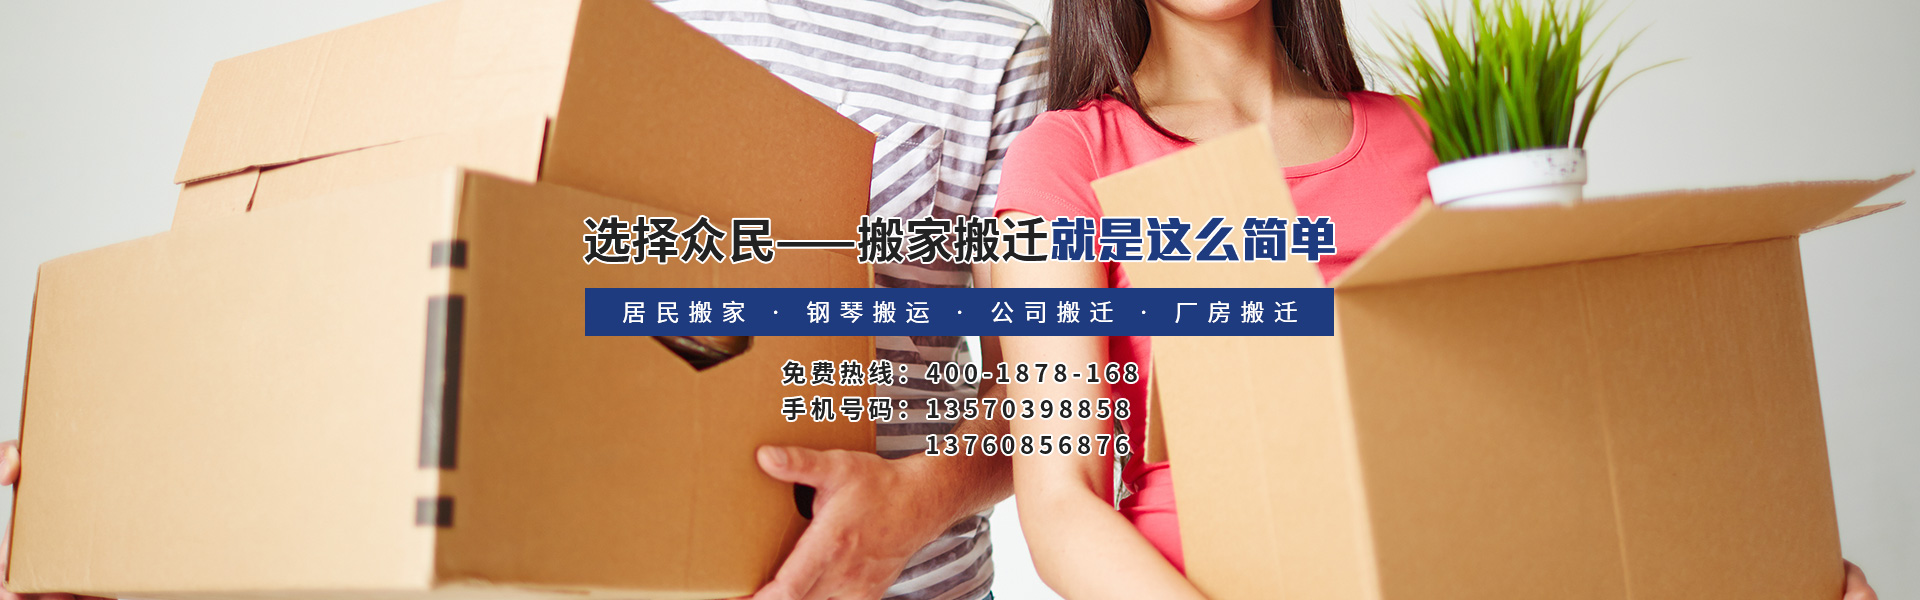 广州众民搬家公司,承接白云区居民搬家|钢琴搬运等搬家服务